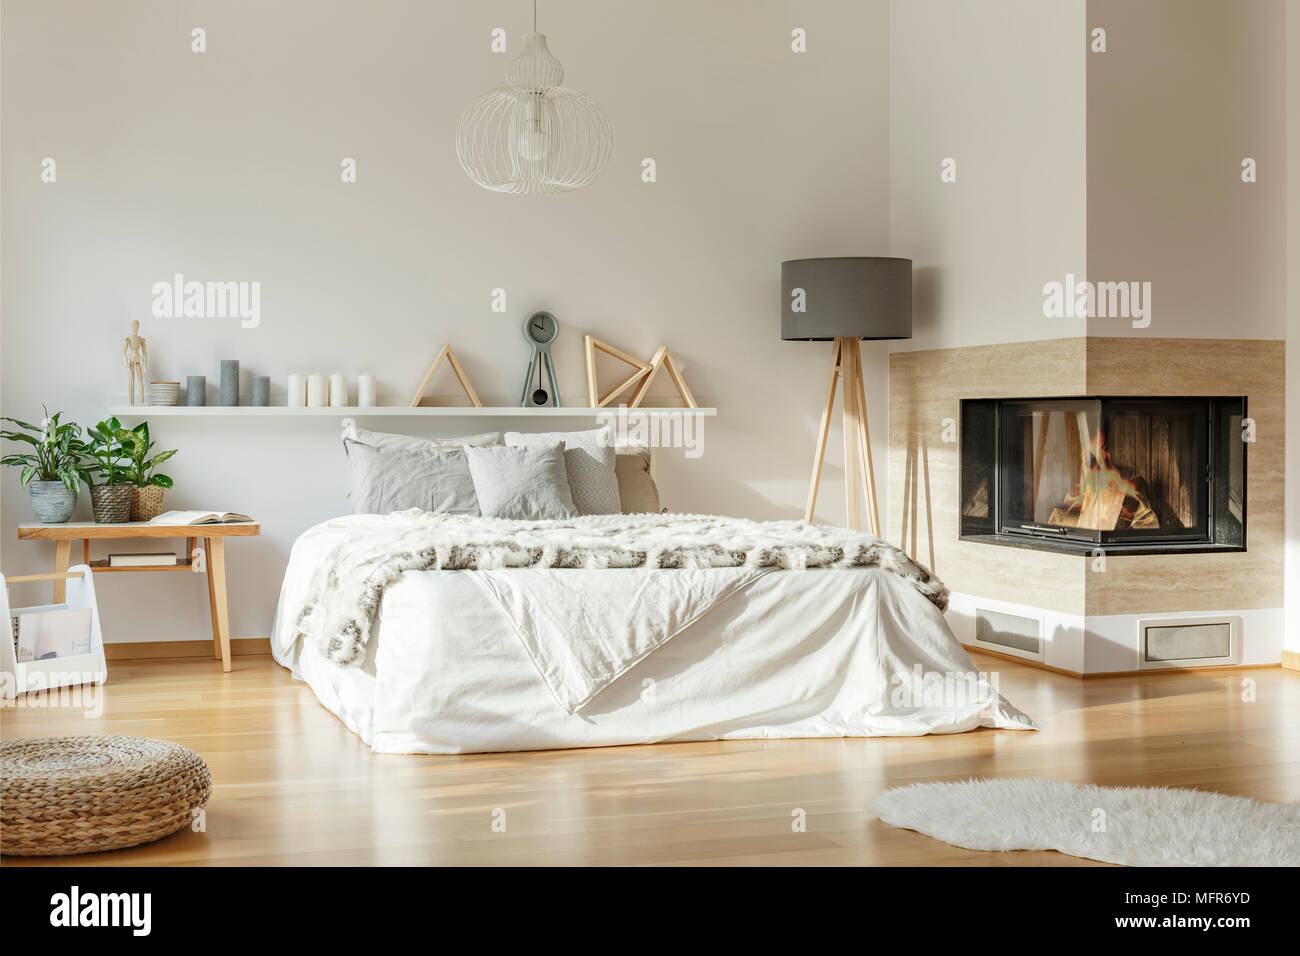 Geräumiges Schlafzimmer mit Kamin, großes Bett, Lampe, Wolldecke und Ornamente Stockfoto